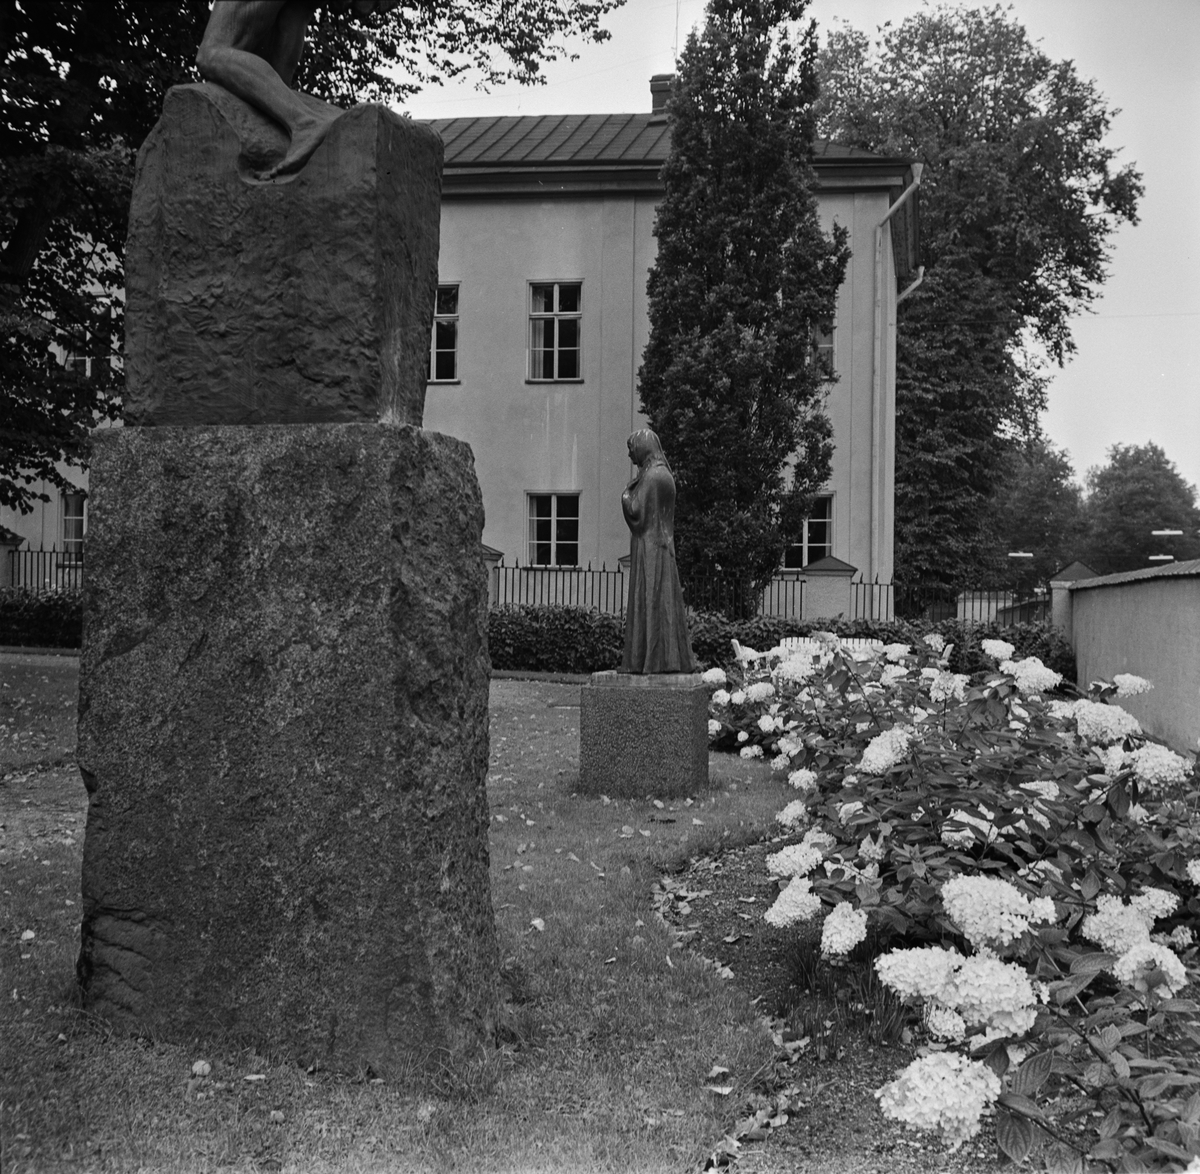 Statyerna Mor av Carl Eldh och Vingarna av Carl Milles vid Uplands Nation, S:t Larsgatan, Uppsala